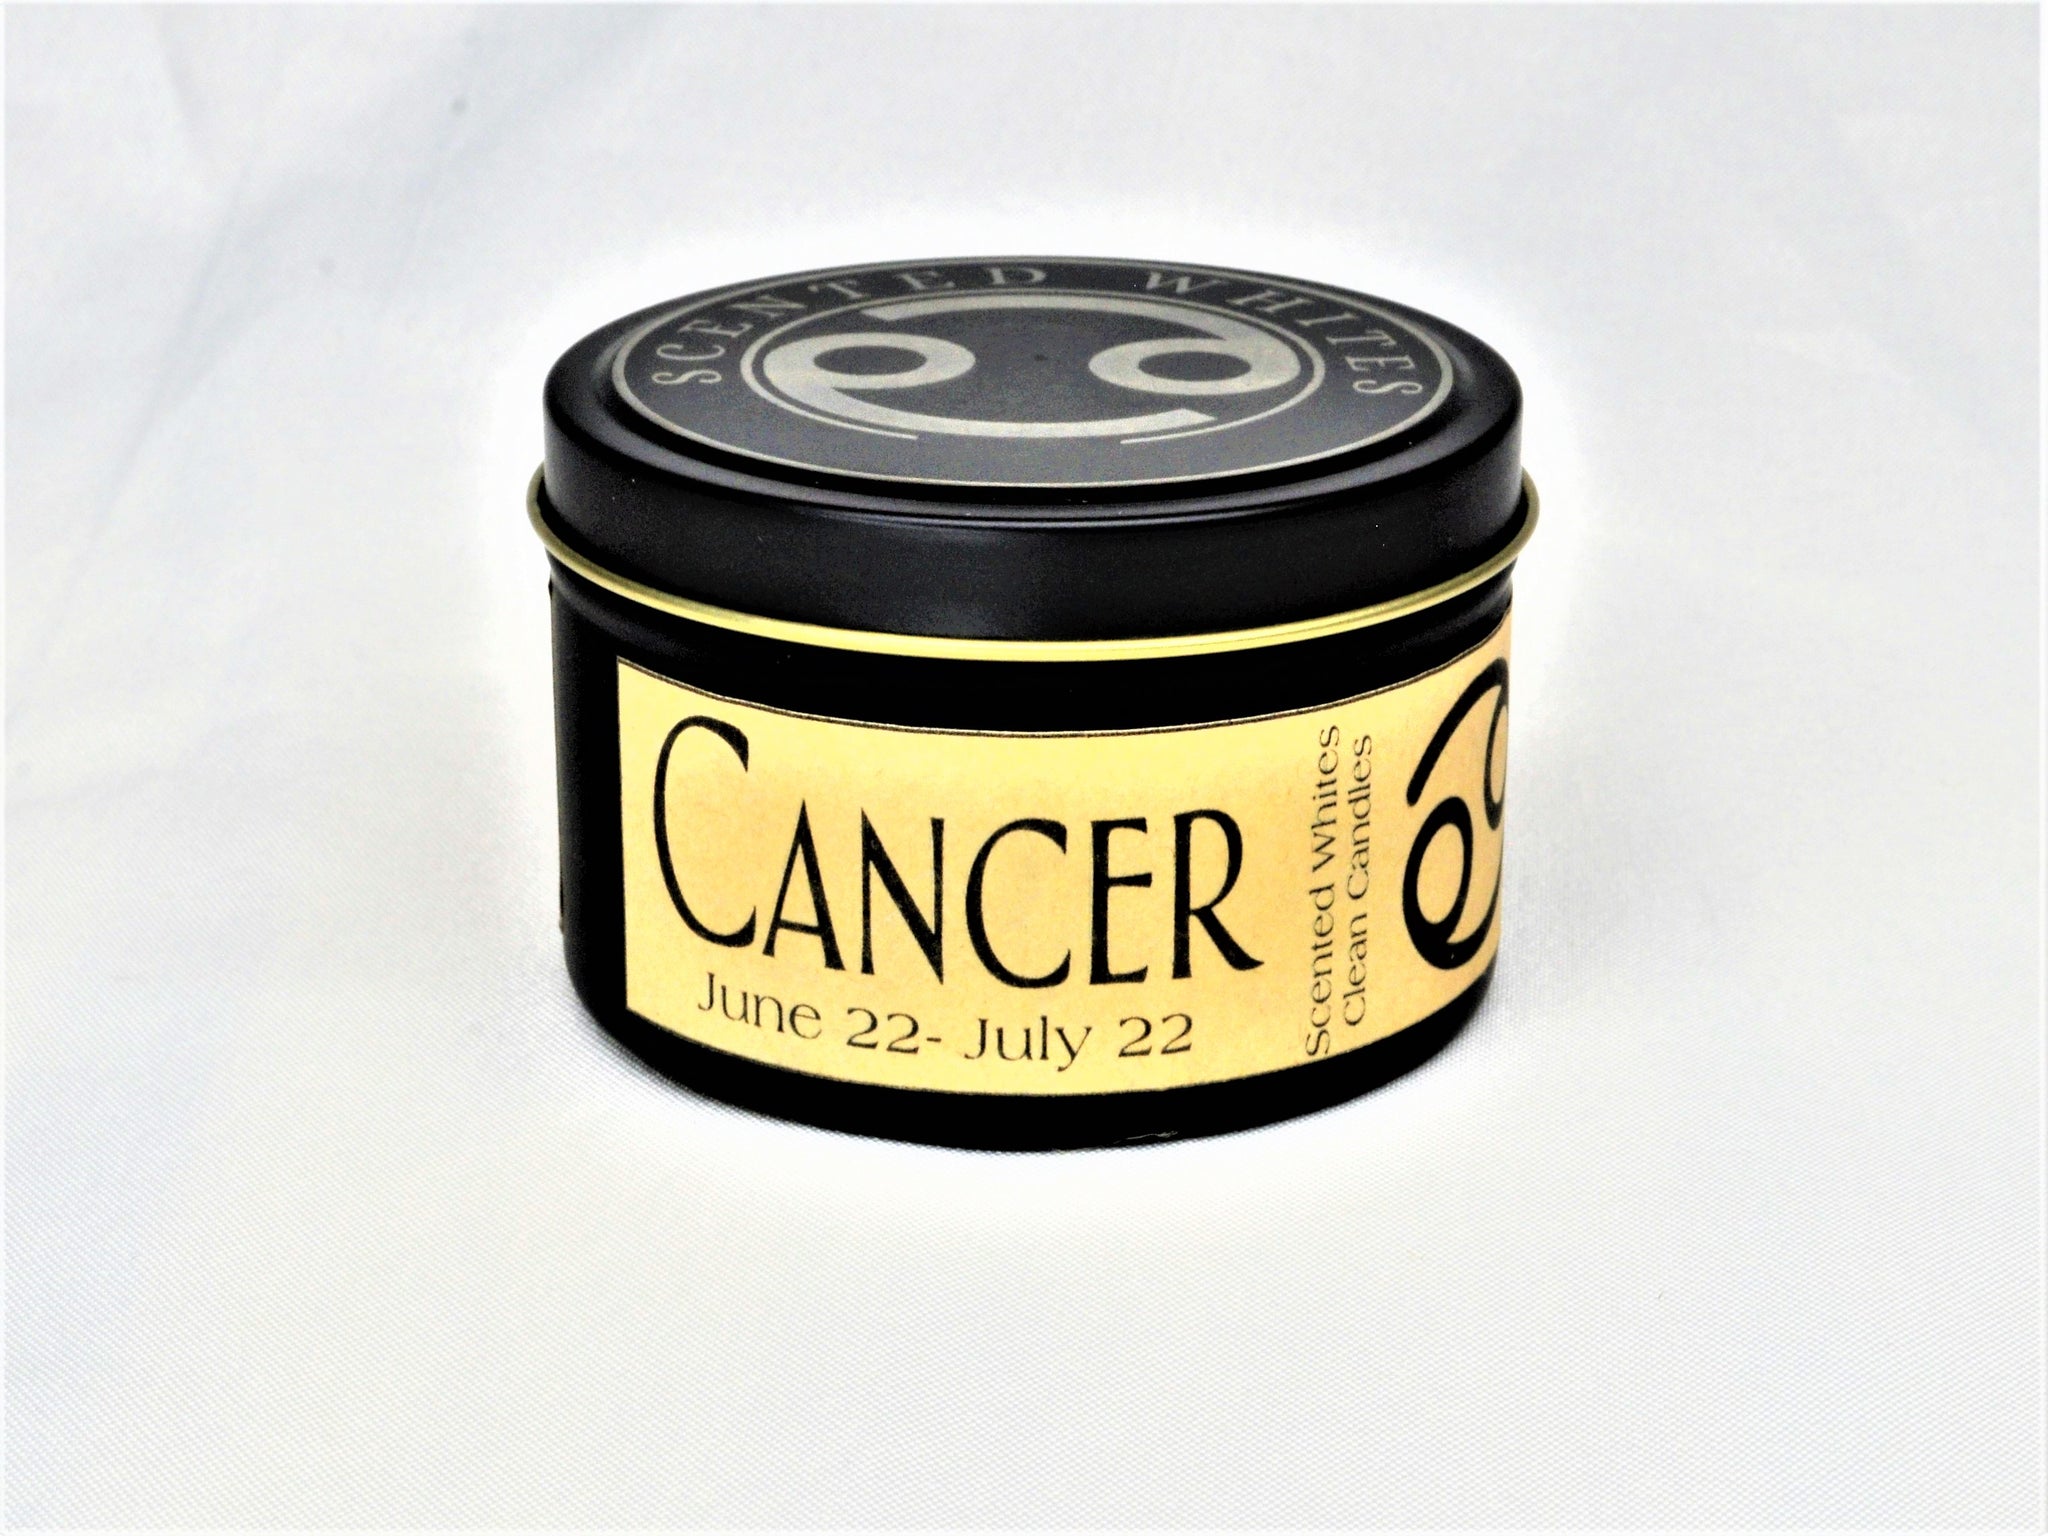 CANCER Tin Can